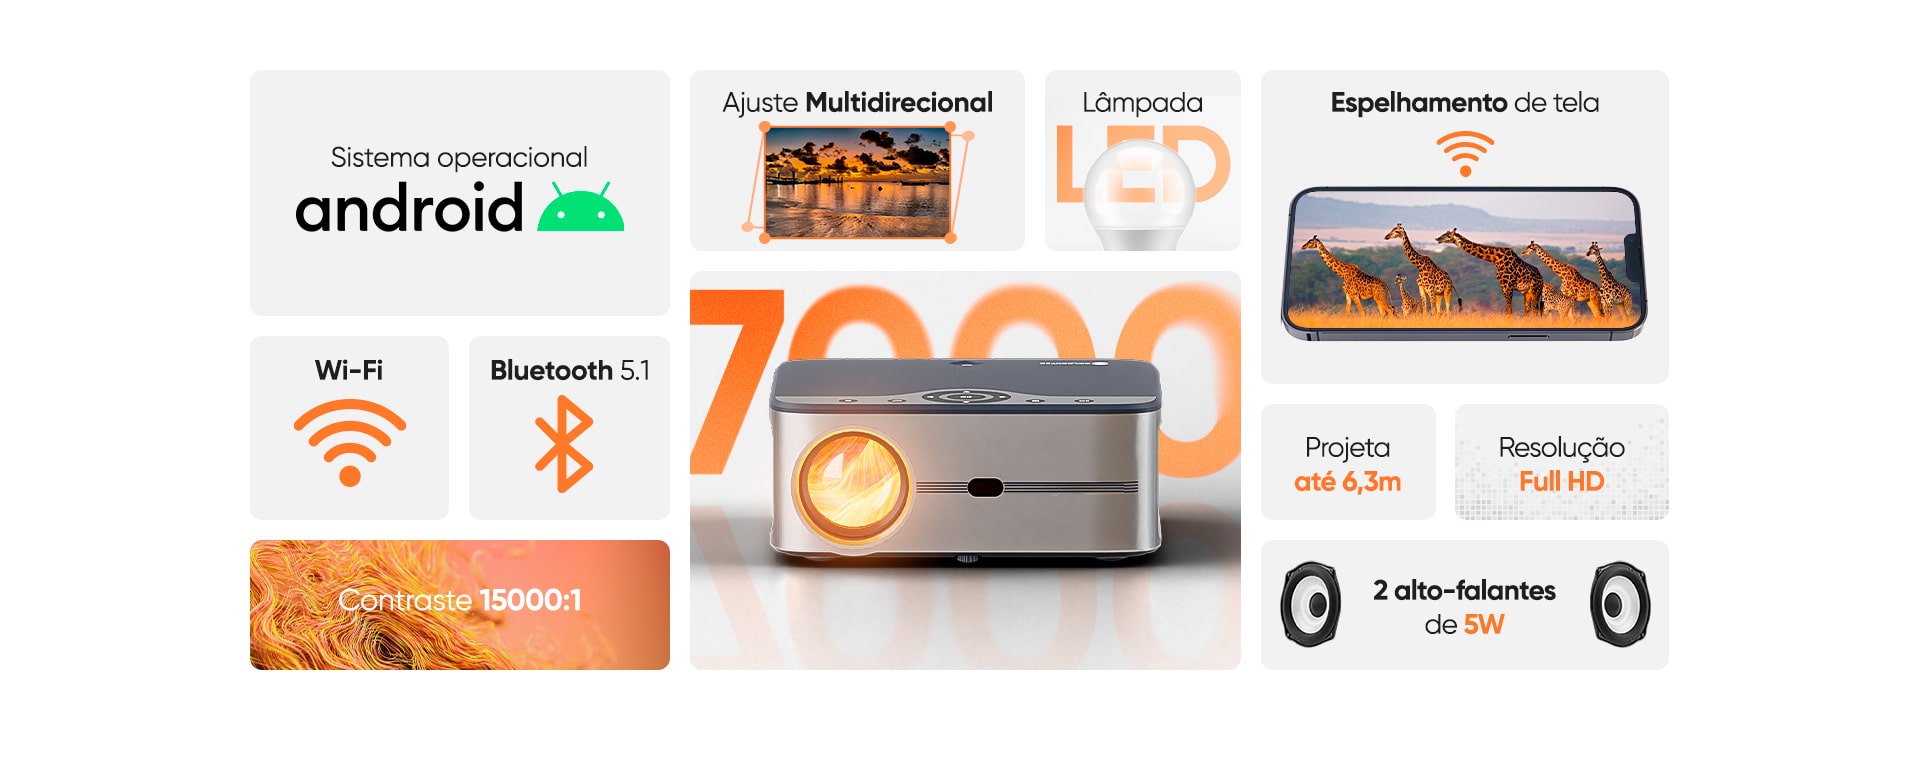 Projetor Multimídia Goldentec 7000 Lúmens Full HD com Android, HDMI, USB, AV